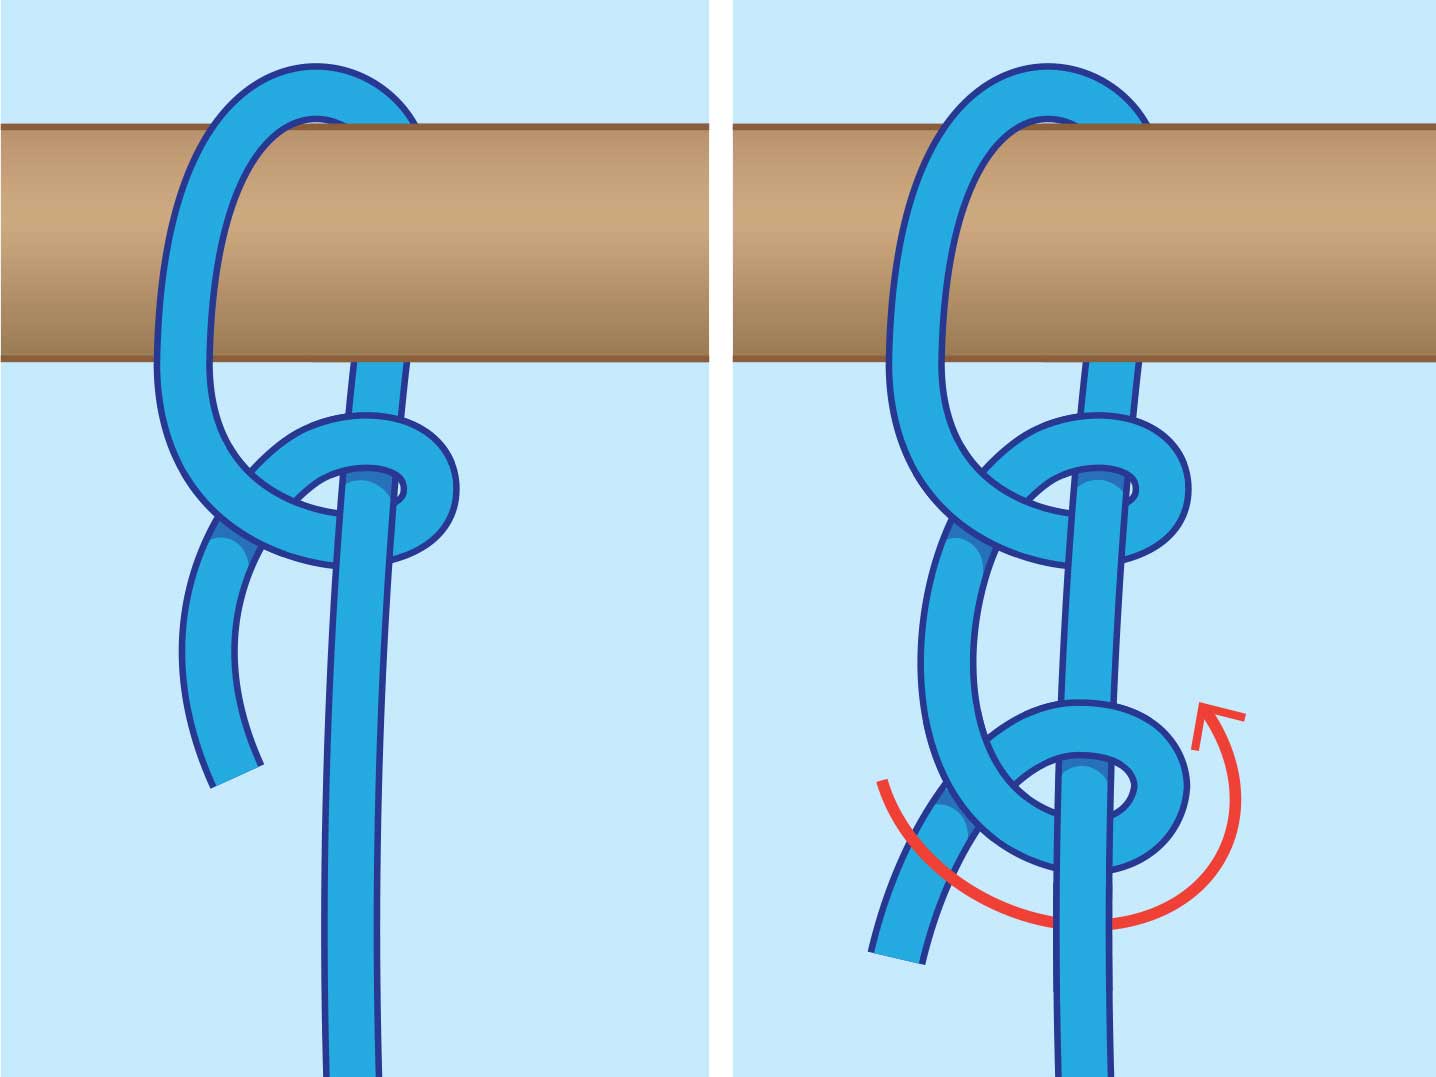 Как привязать веревку к волосам